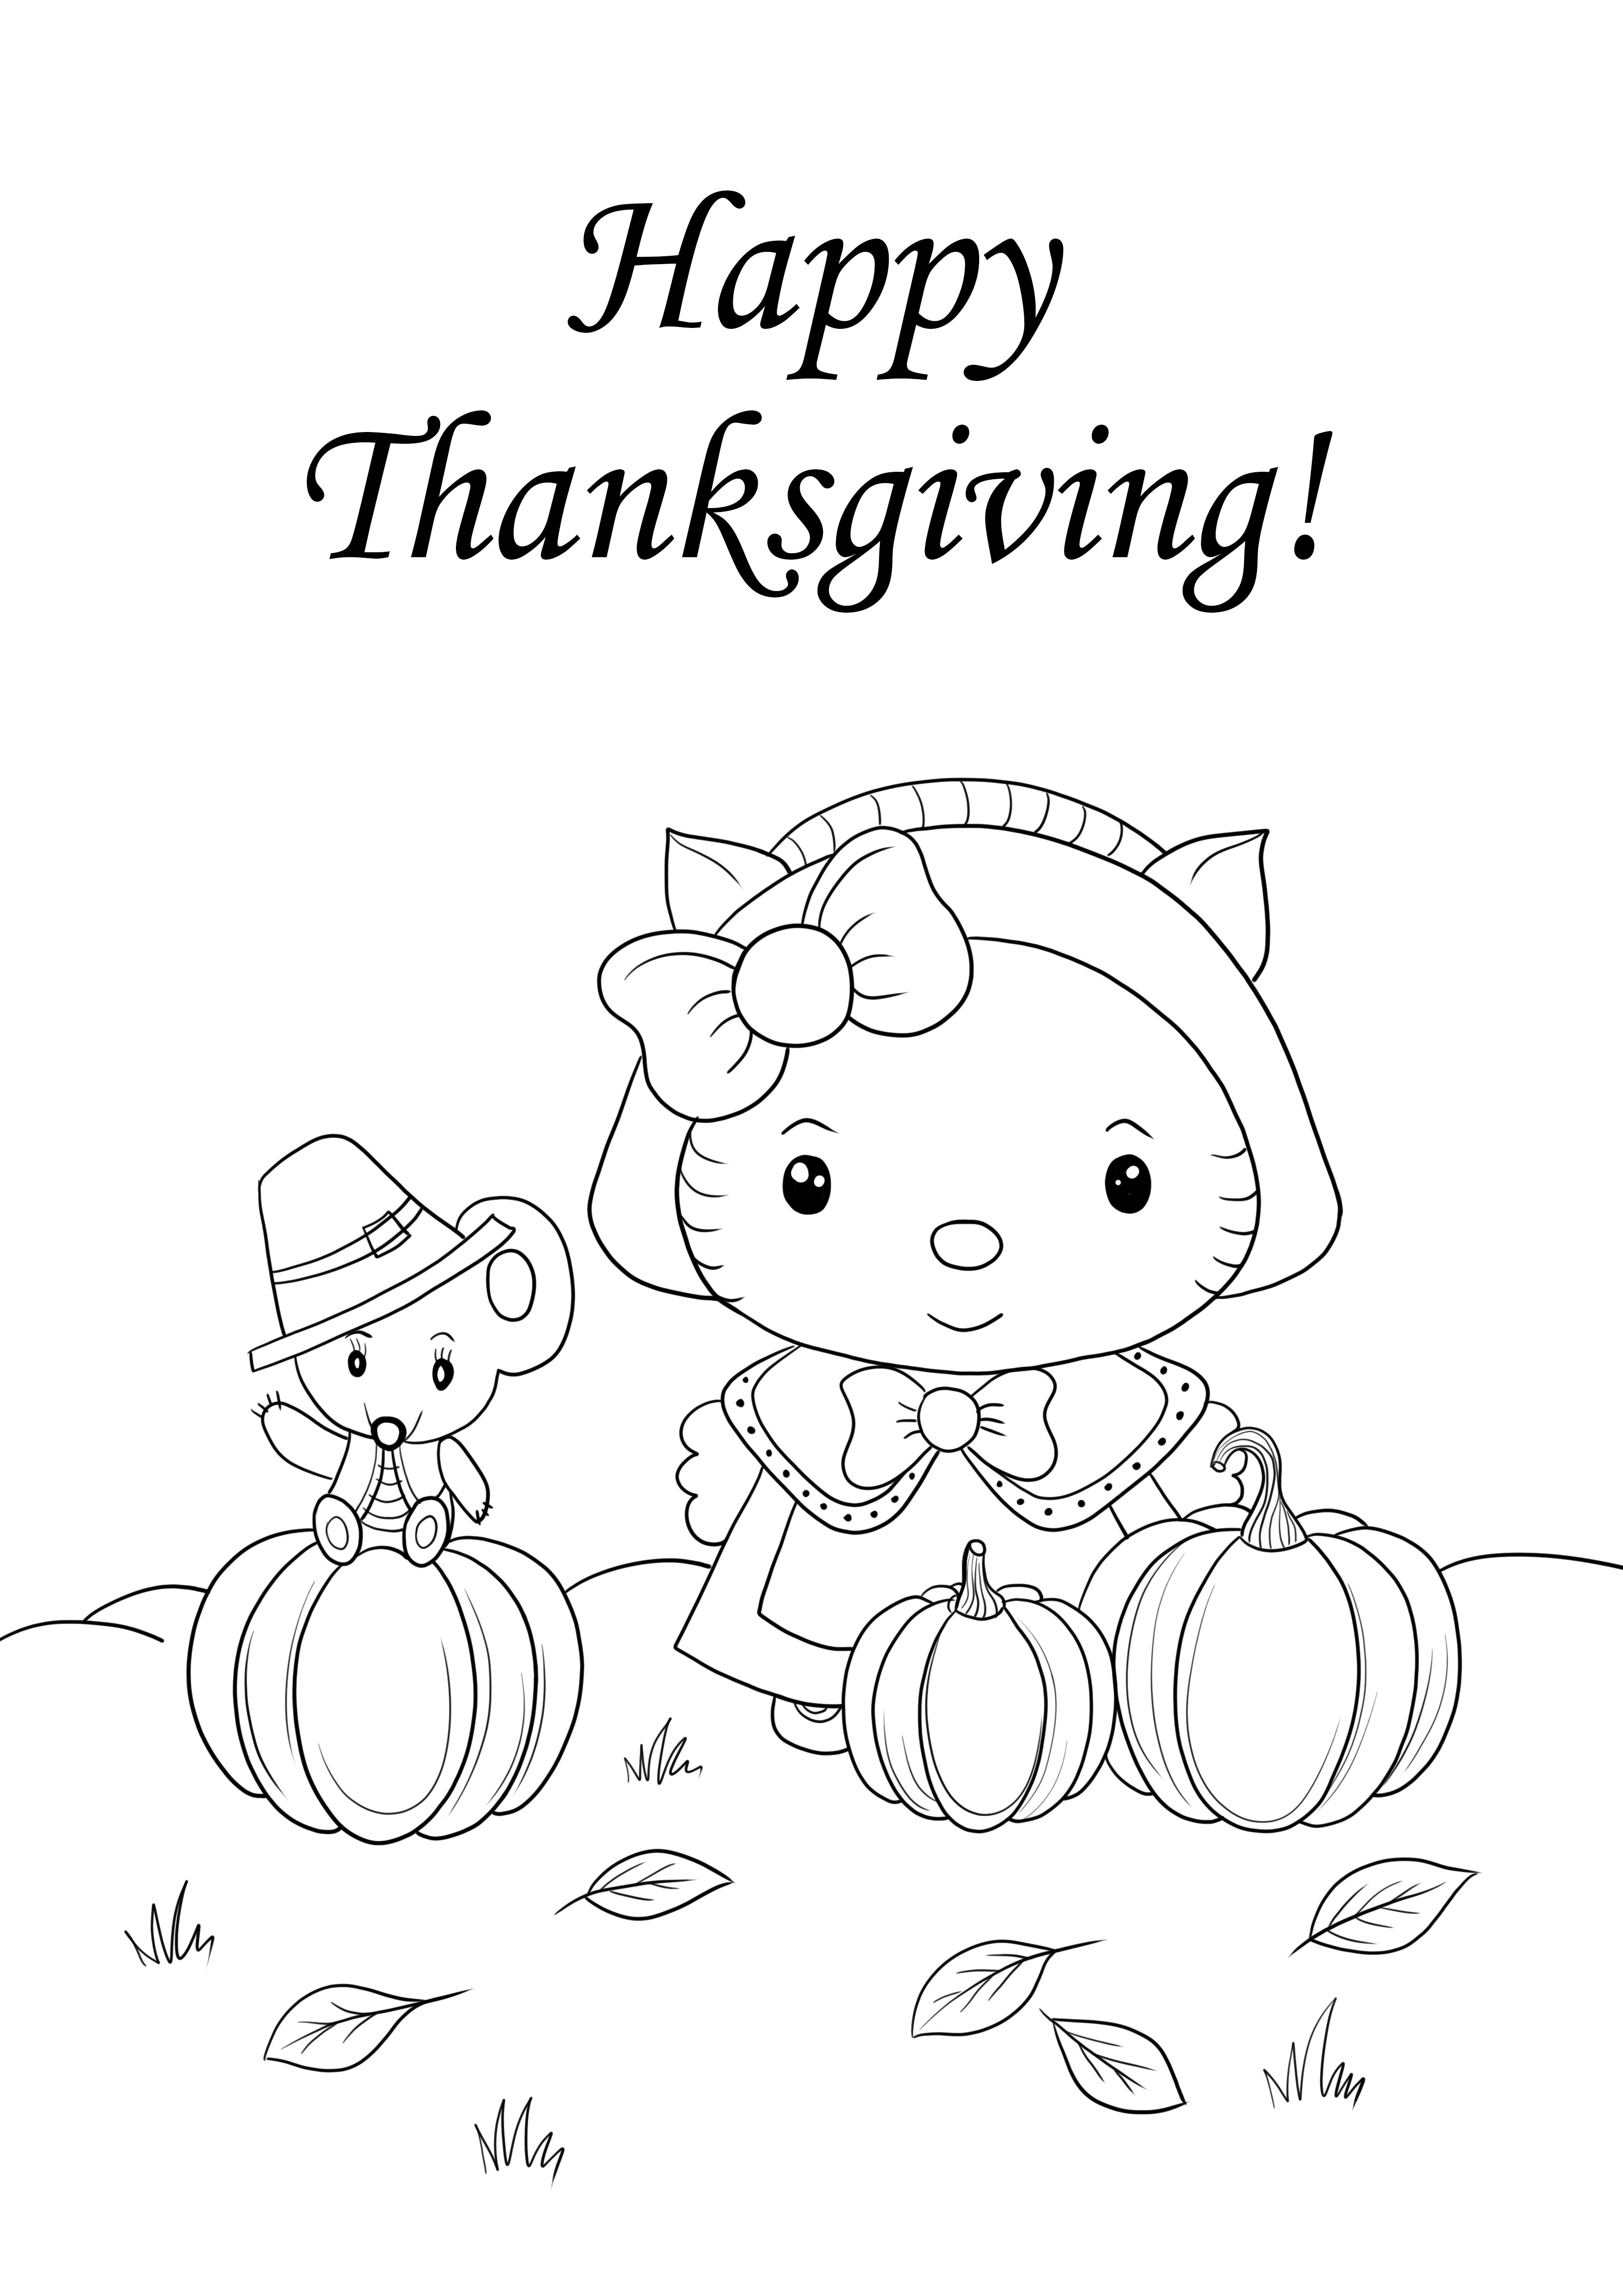 Dibujos de Hello Kitty y Happy Thanksgiving para imprimir y colorear